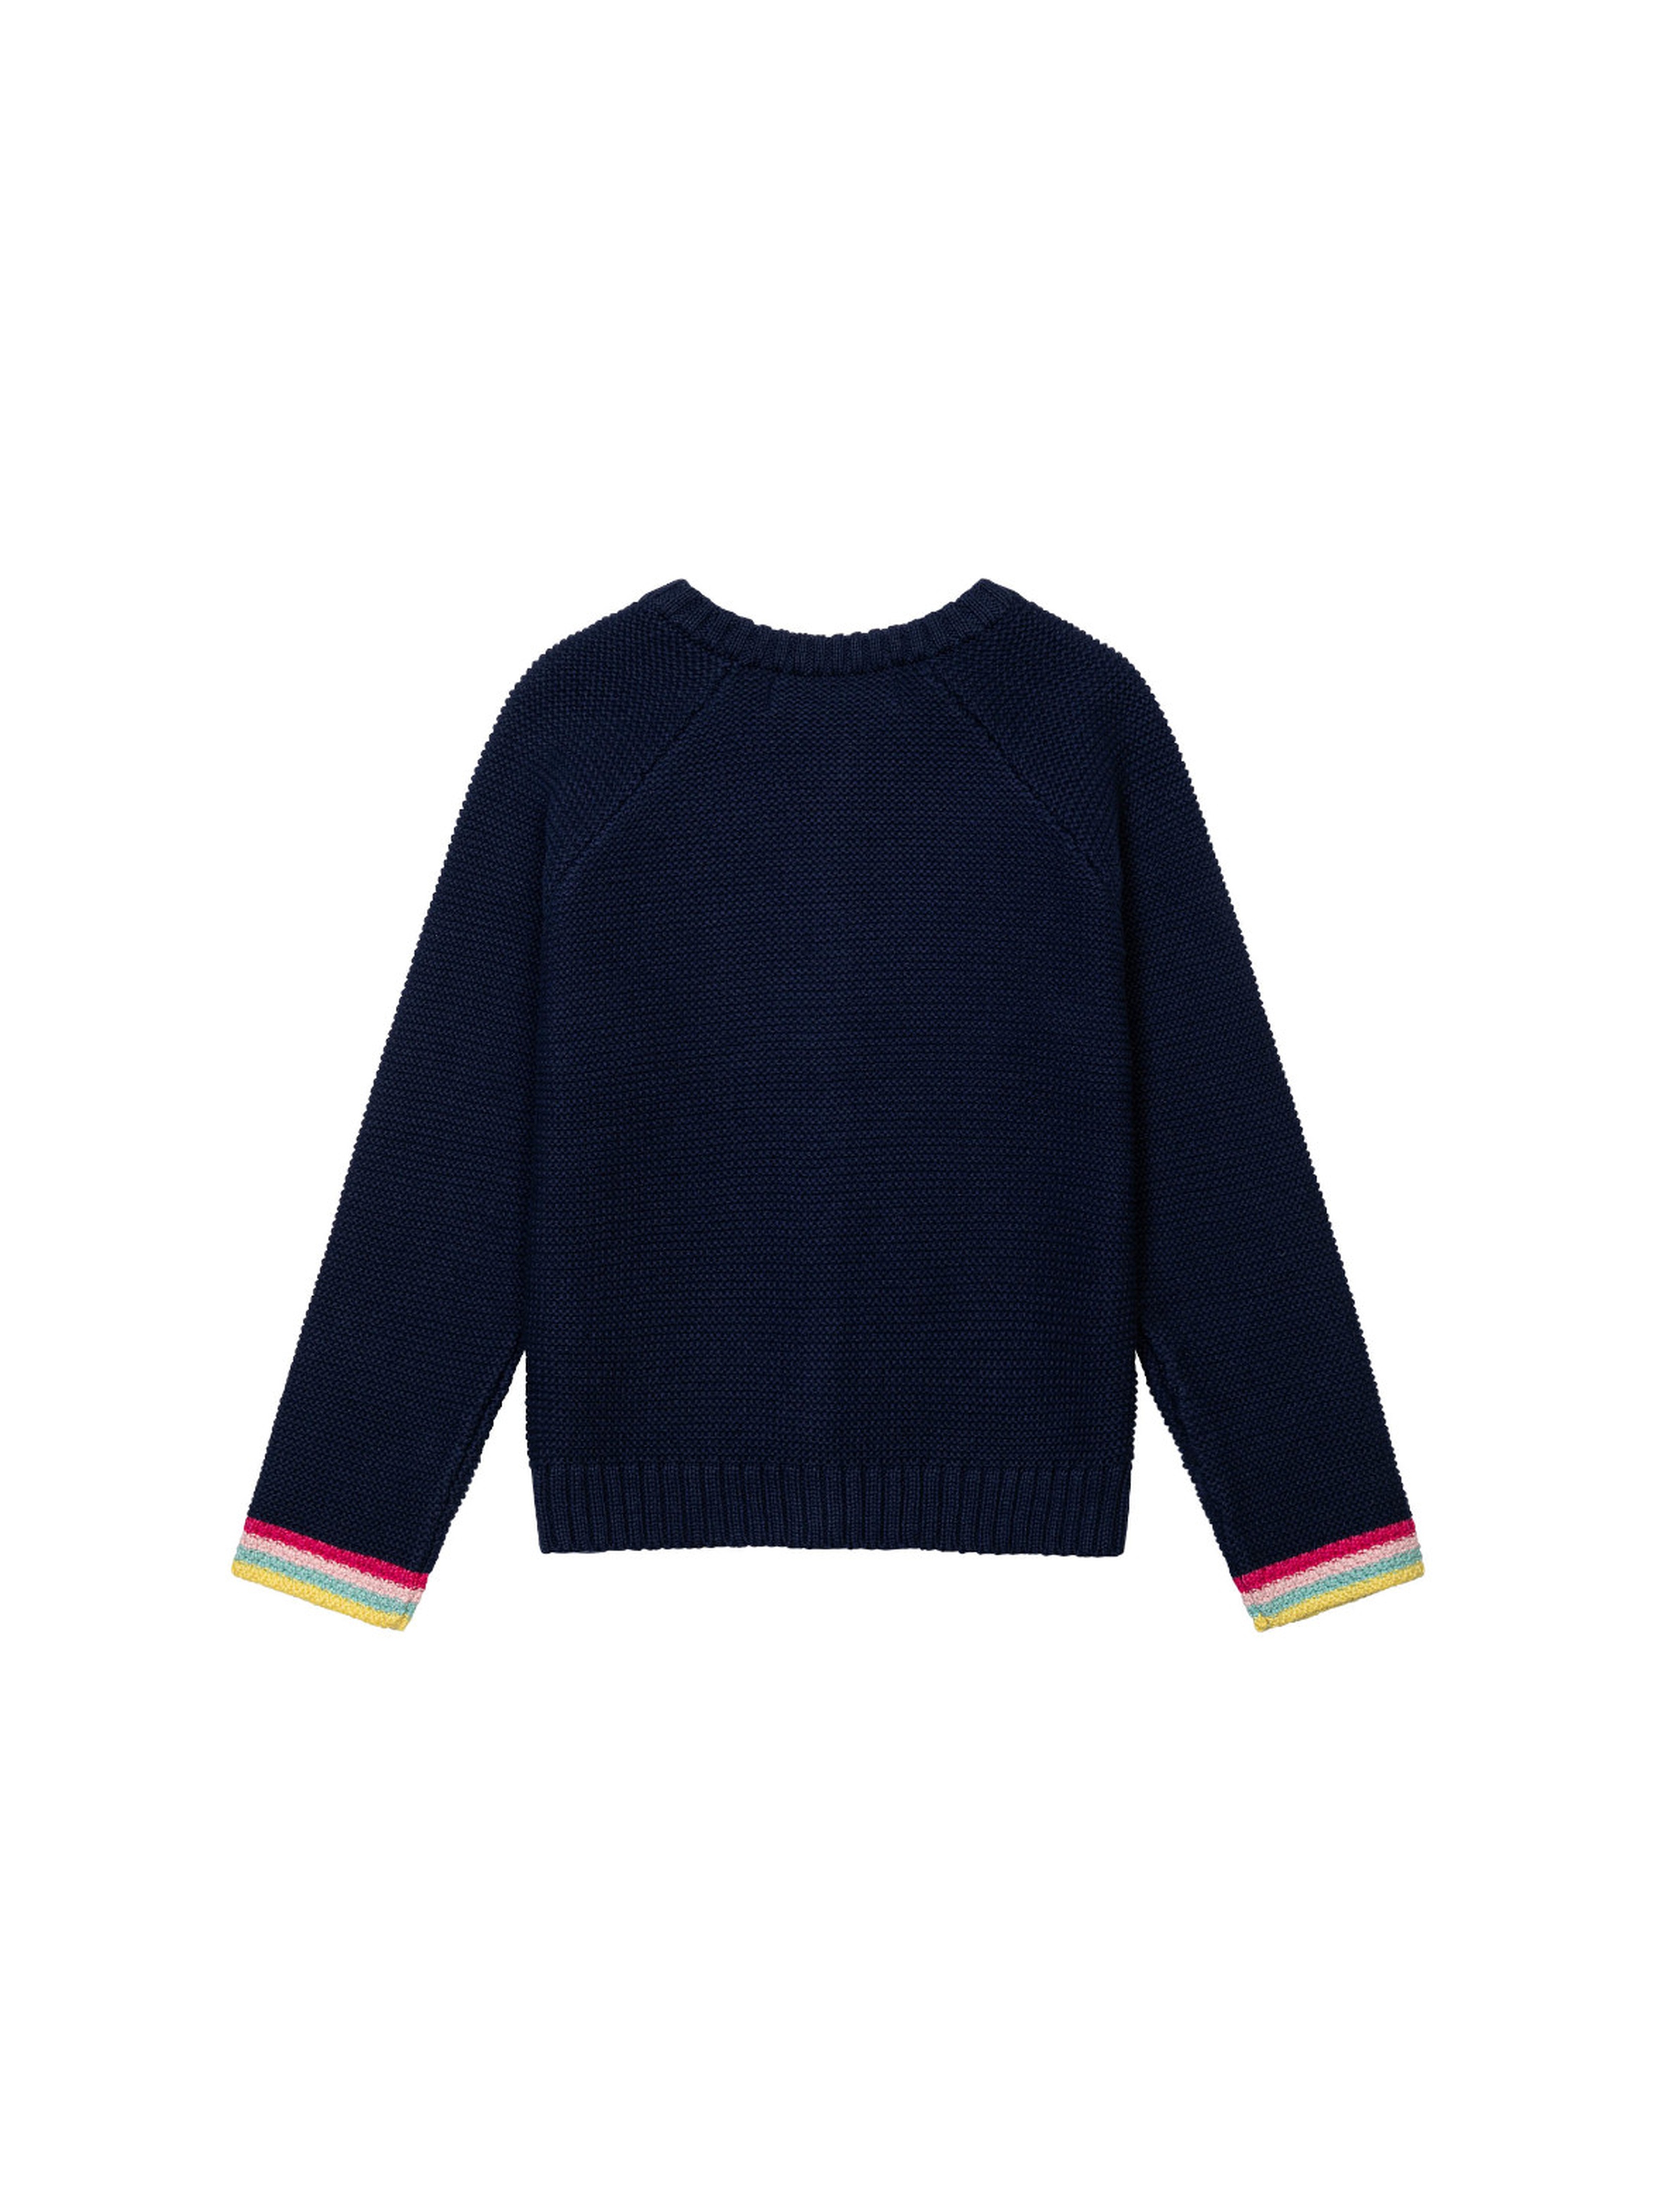 Granatowy sweter dziewczęcy rozpinany z motywem tęczy